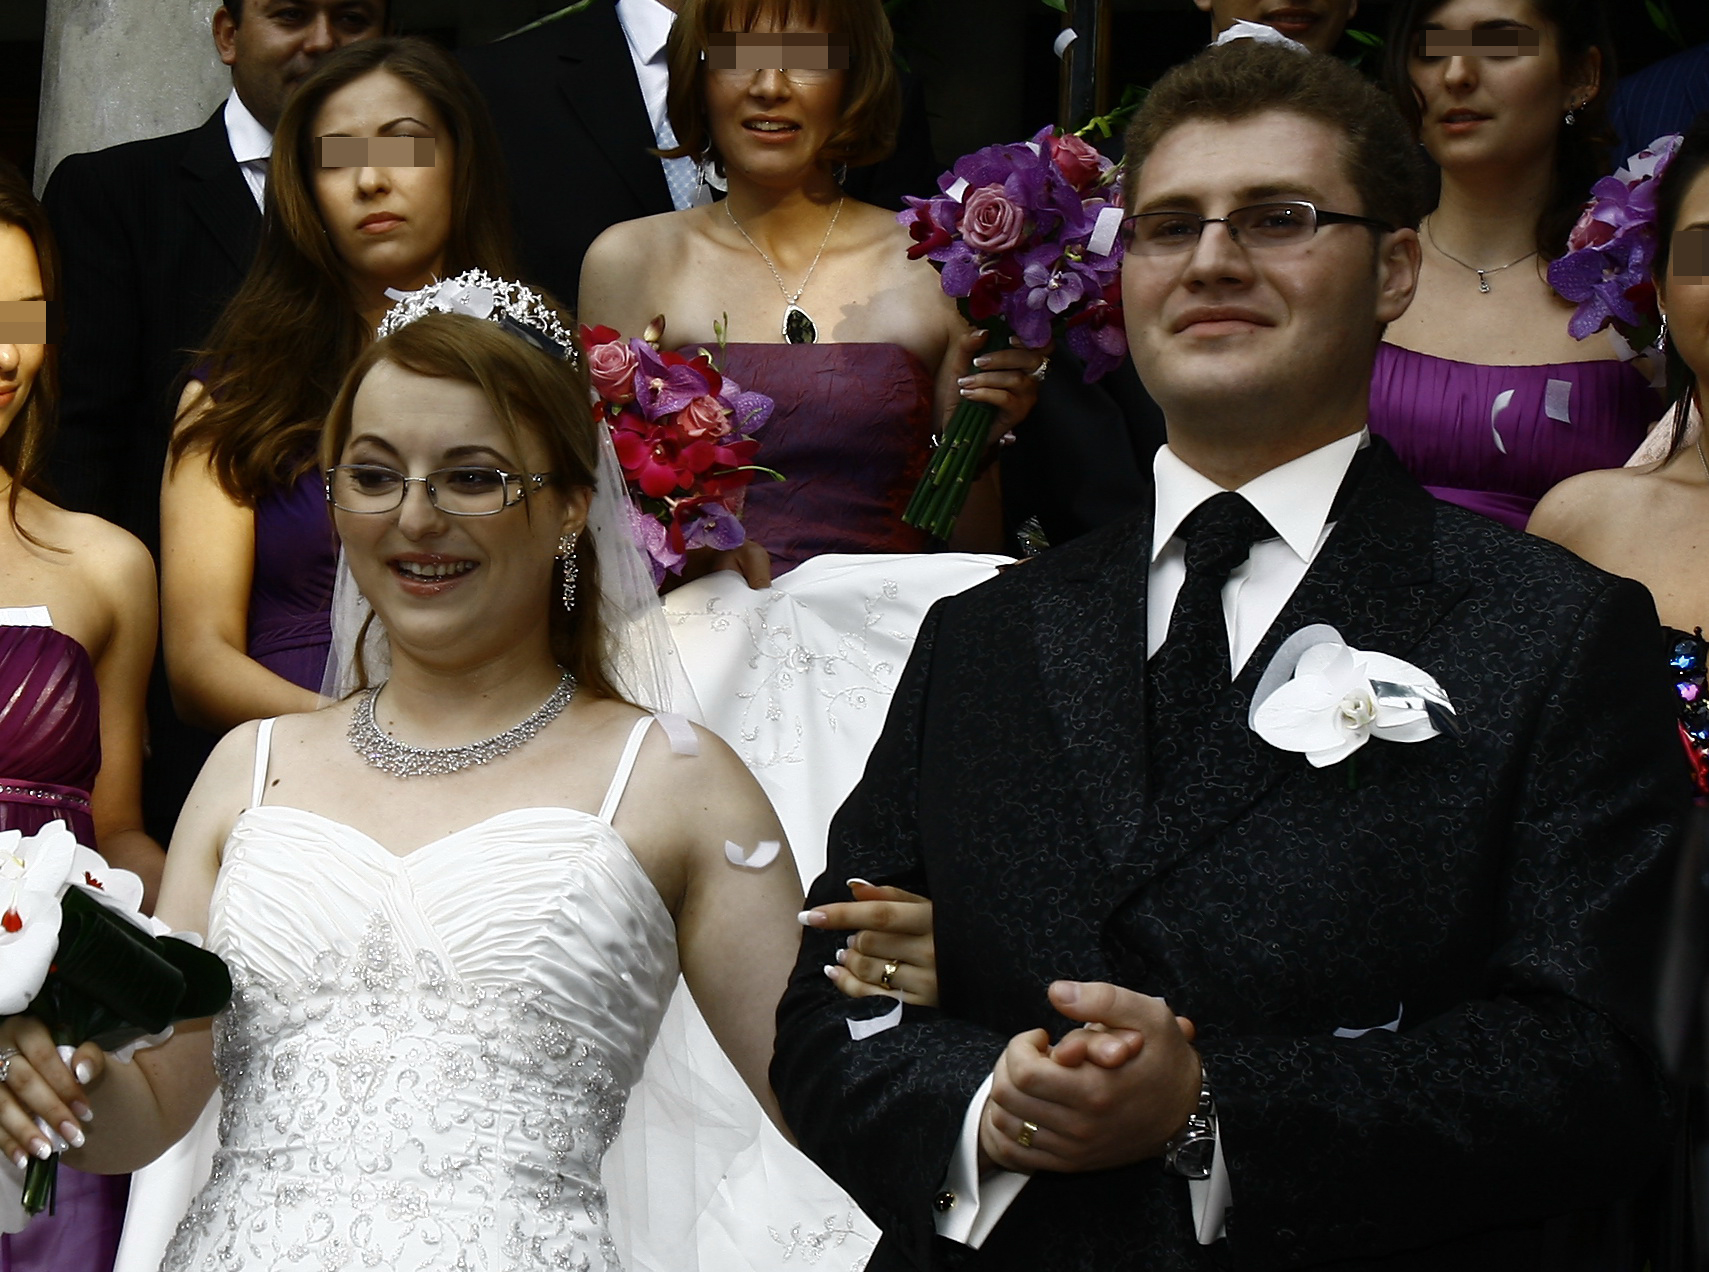 Fiica cea mare a lui Blaga, Agathe, si Ionut Rudeanu s-au casatorit religios in iunie 2011 la Biserica Sfantul Elefterie, iar petrecerea a avut loc la Domeniul Stirbey din Buftea